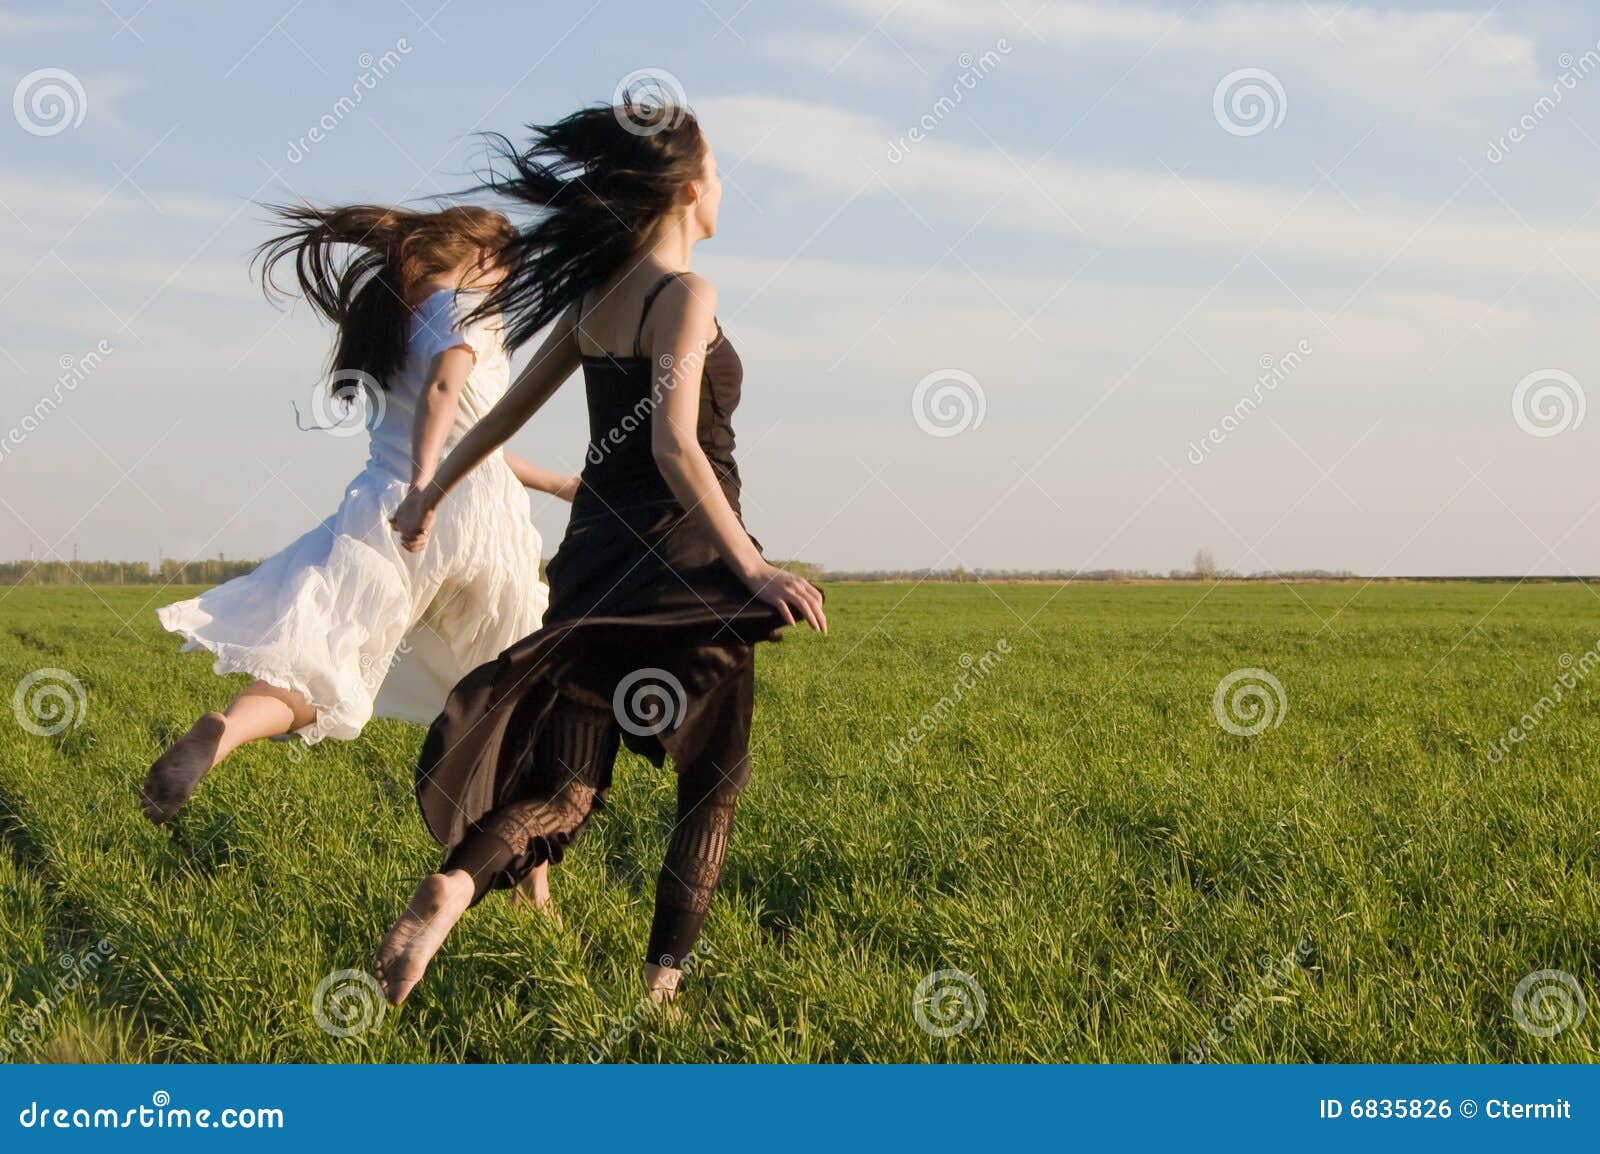 Полоть 2 лицо. Подружки в поле. Фотосессия в поле с подругой. Две девушки в поле. Две подружки в поле.